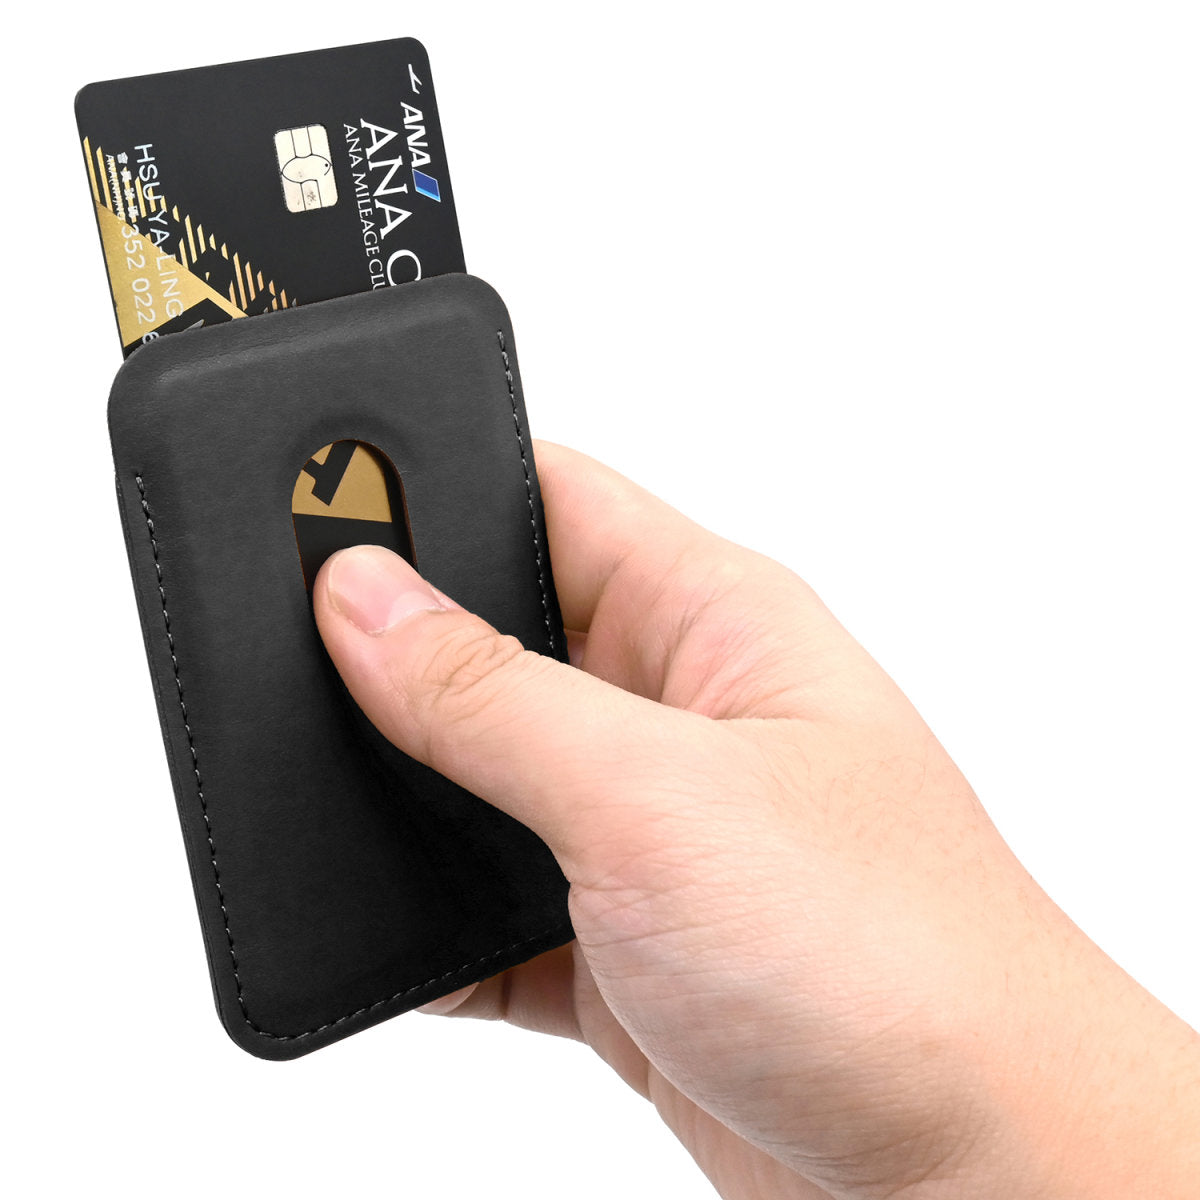 Kickstand Wallet braun Karten-Etui Handy Smartphone Halterung for Apple Ihpone Samsung & more